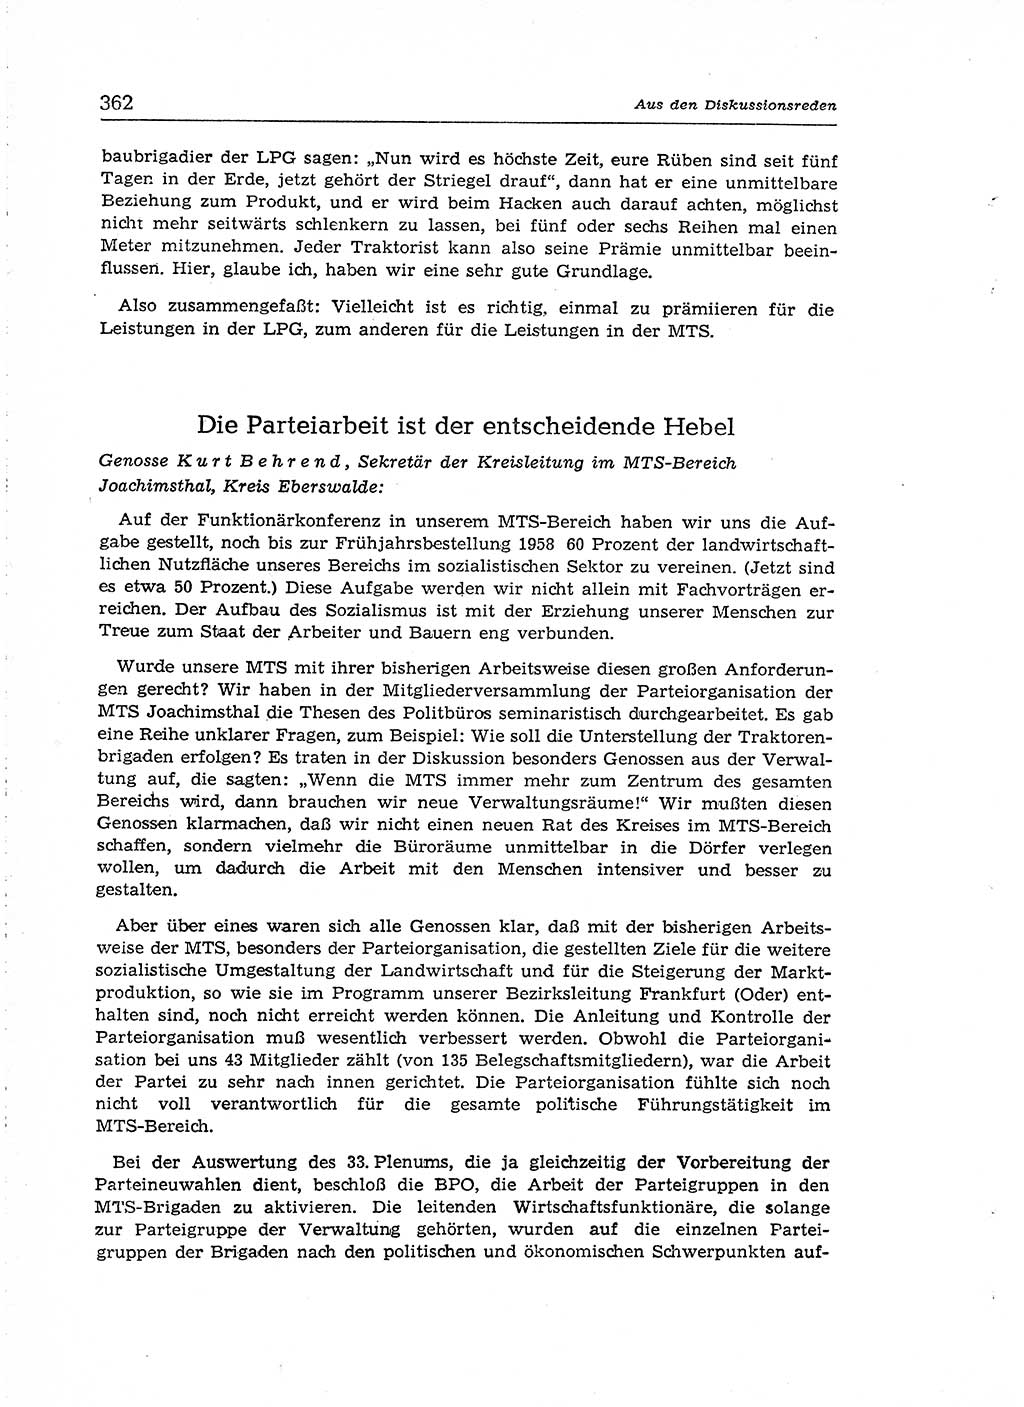 Neuer Weg (NW), Organ des Zentralkomitees (ZK) der SED (Sozialistische Einheitspartei Deutschlands) für Fragen des Parteiaufbaus und des Parteilebens, [Deutsche Demokratische Republik (DDR)] 13. Jahrgang 1958, Seite 362 (NW ZK SED DDR 1958, S. 362)